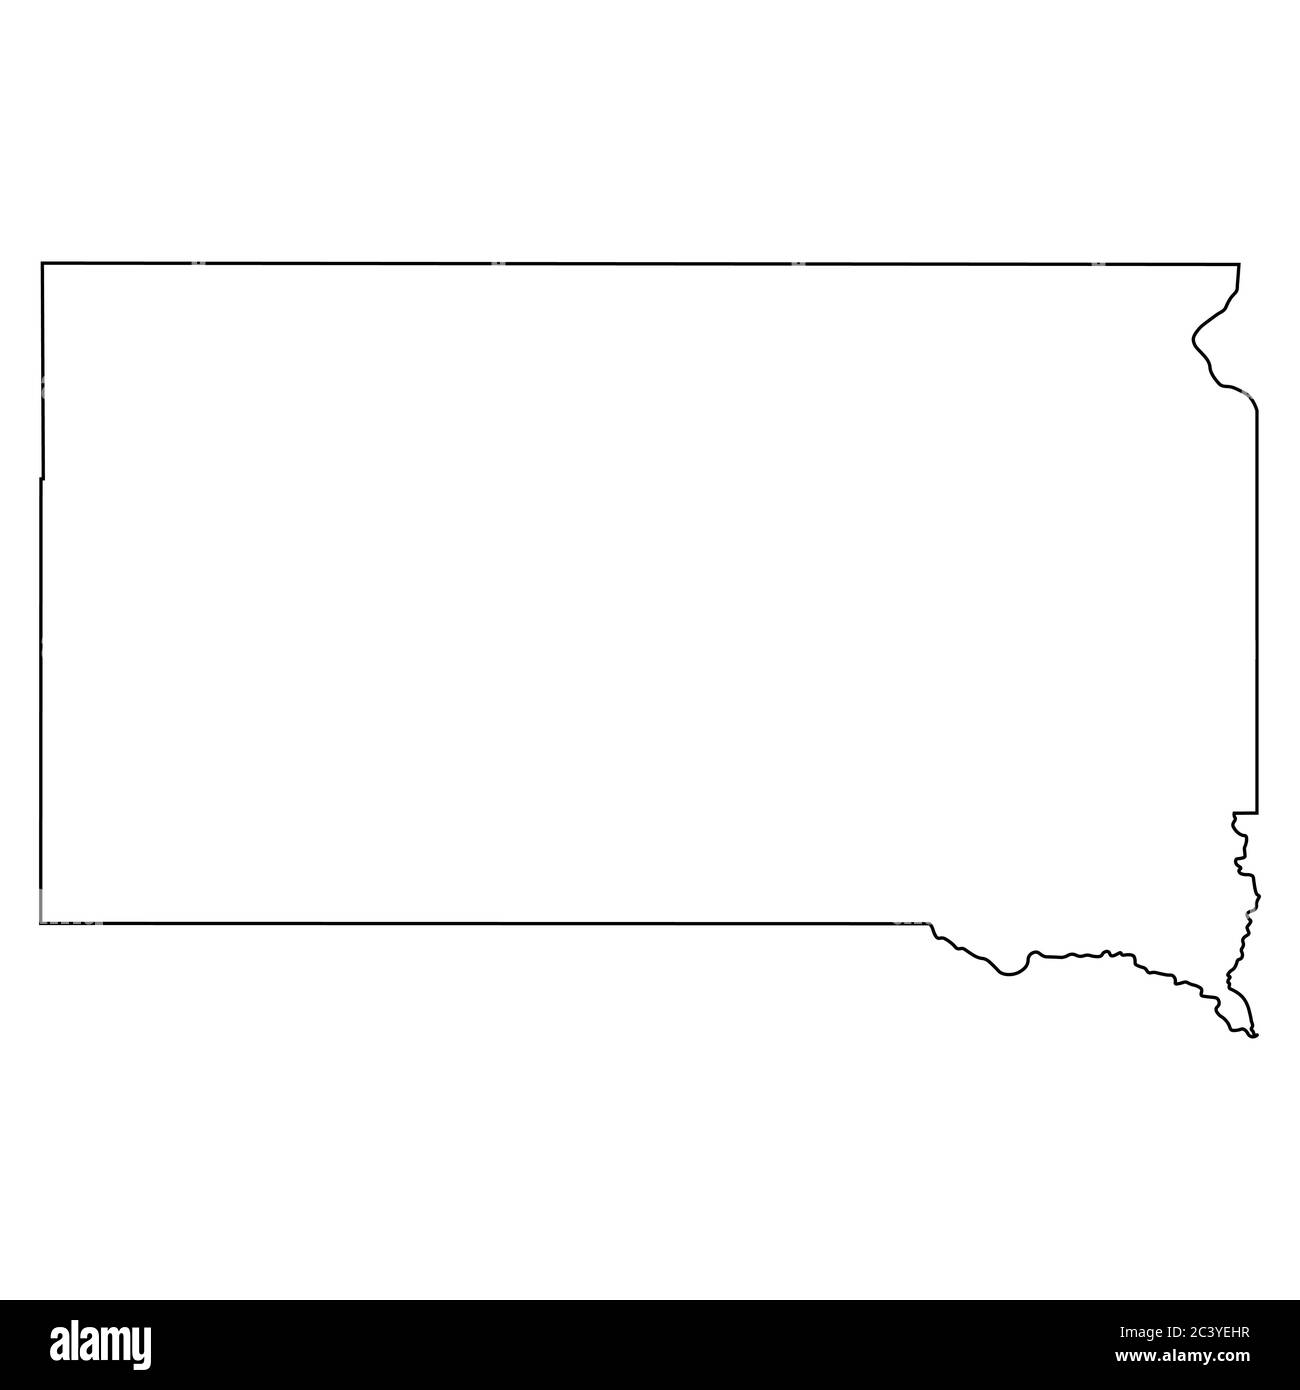 South Dakota SD State Map USA. Schwarze Umrisskarte isoliert auf weißem Hintergrund. EPS-Vektor Stock Vektor